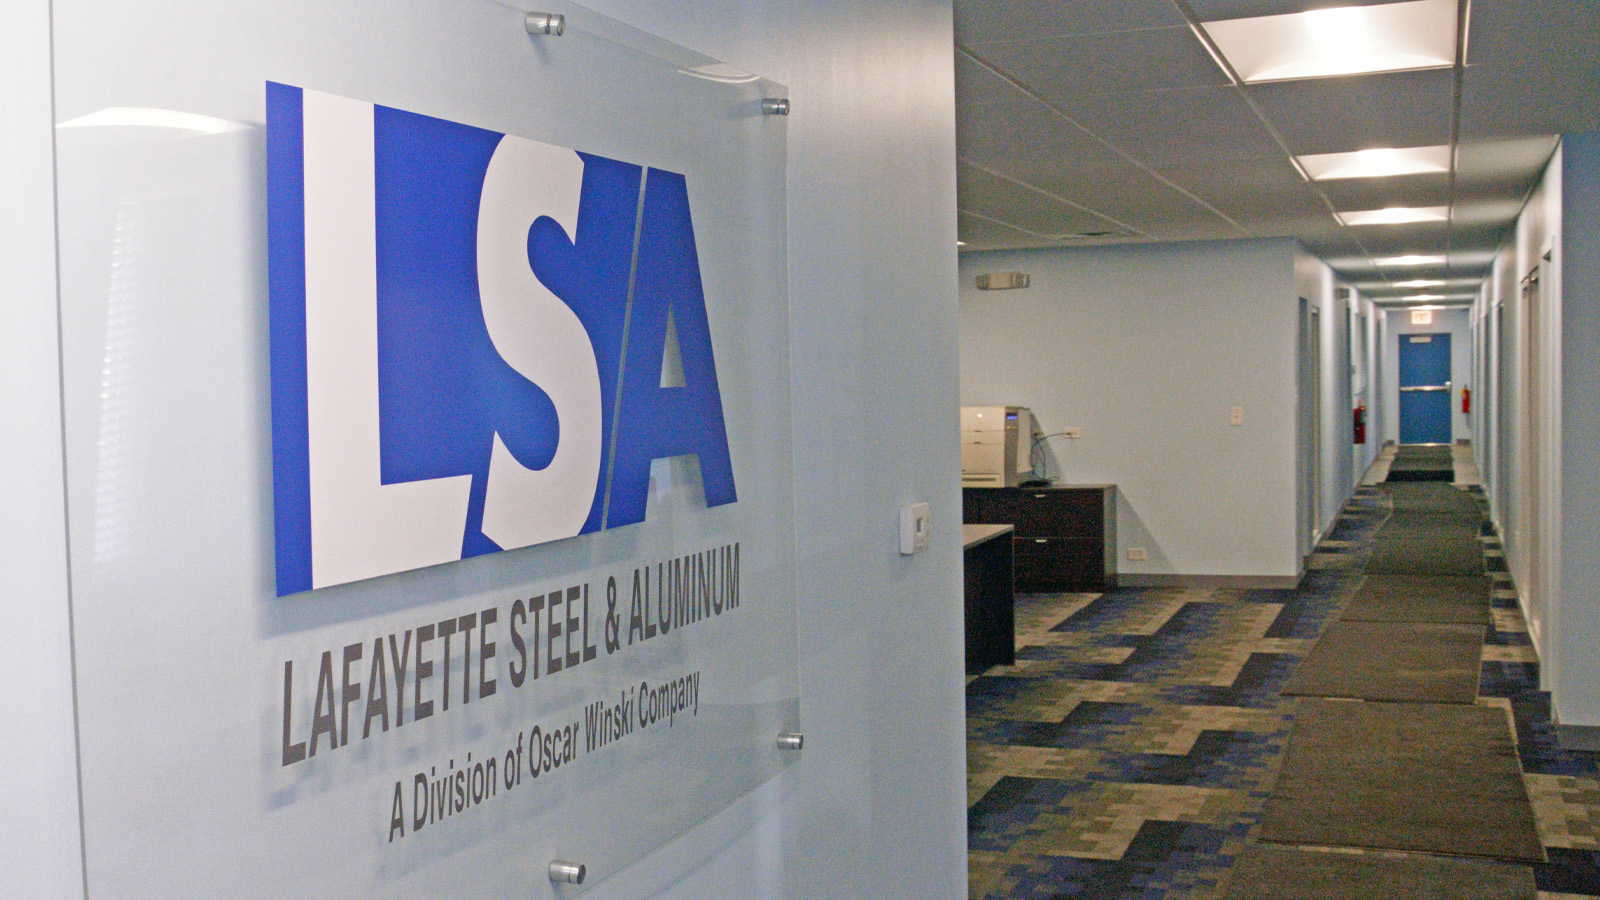 Lafayette Steel Corp Office - web 4.jpg